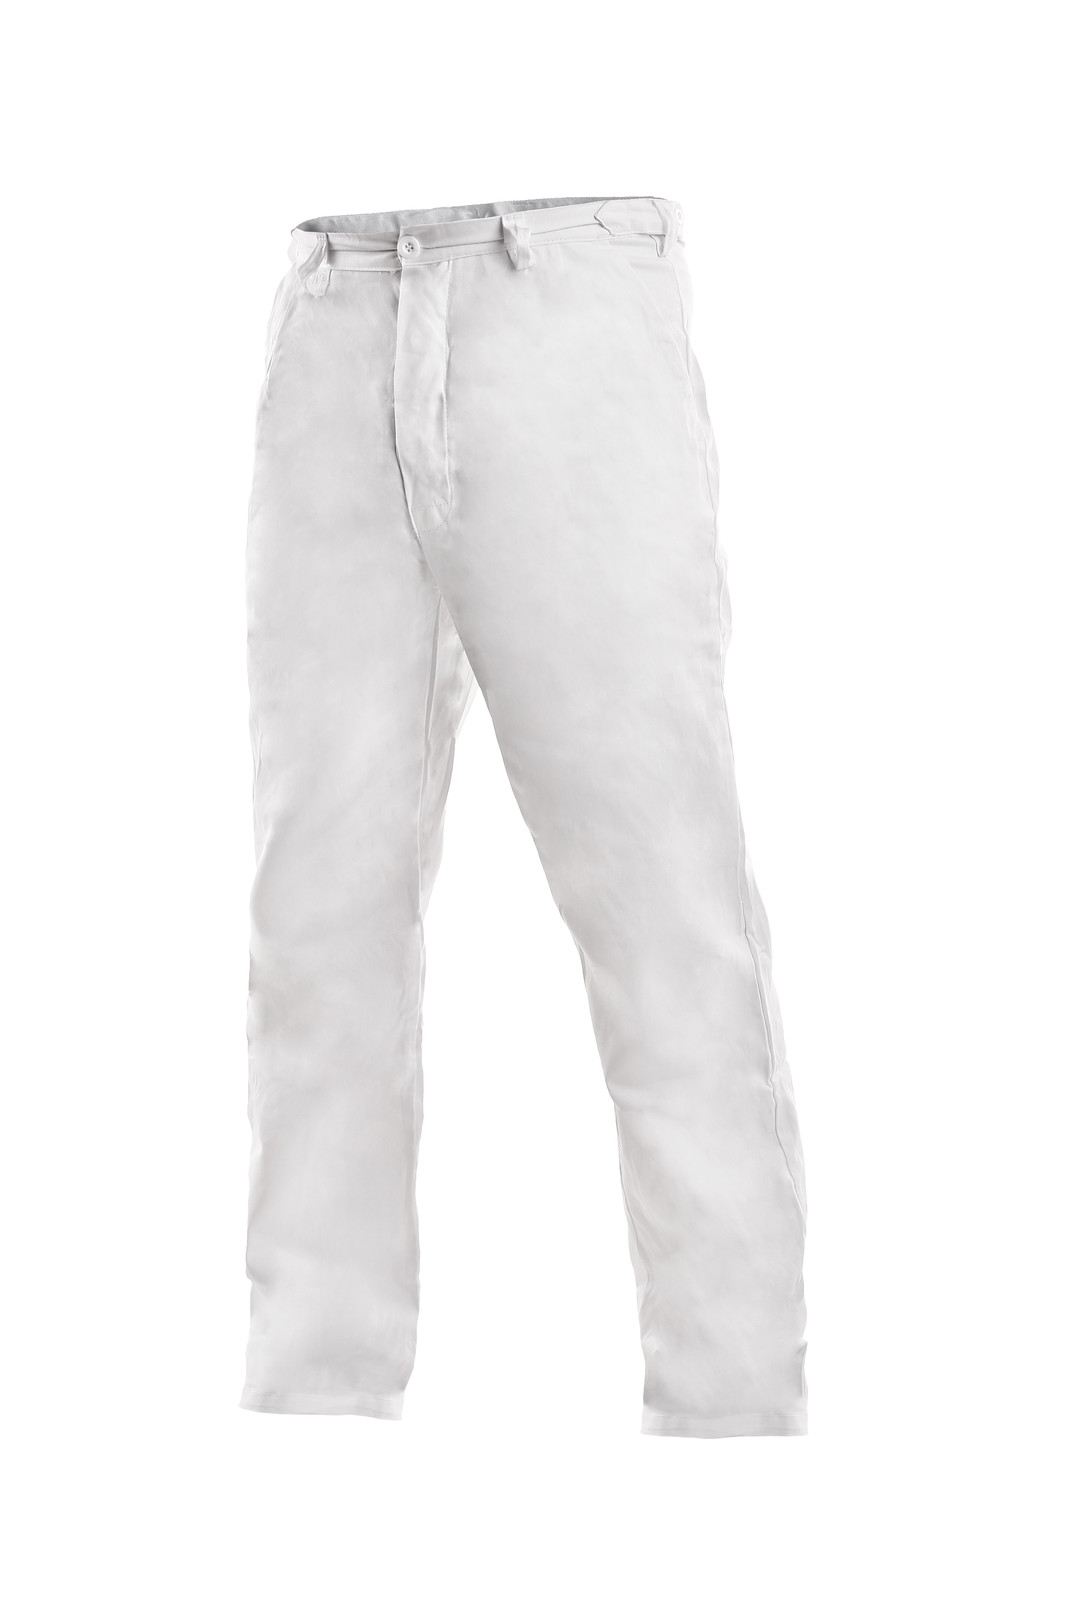 Pánske biele bavlnené nohavice Artur - veľkosť: 50, farba: biela